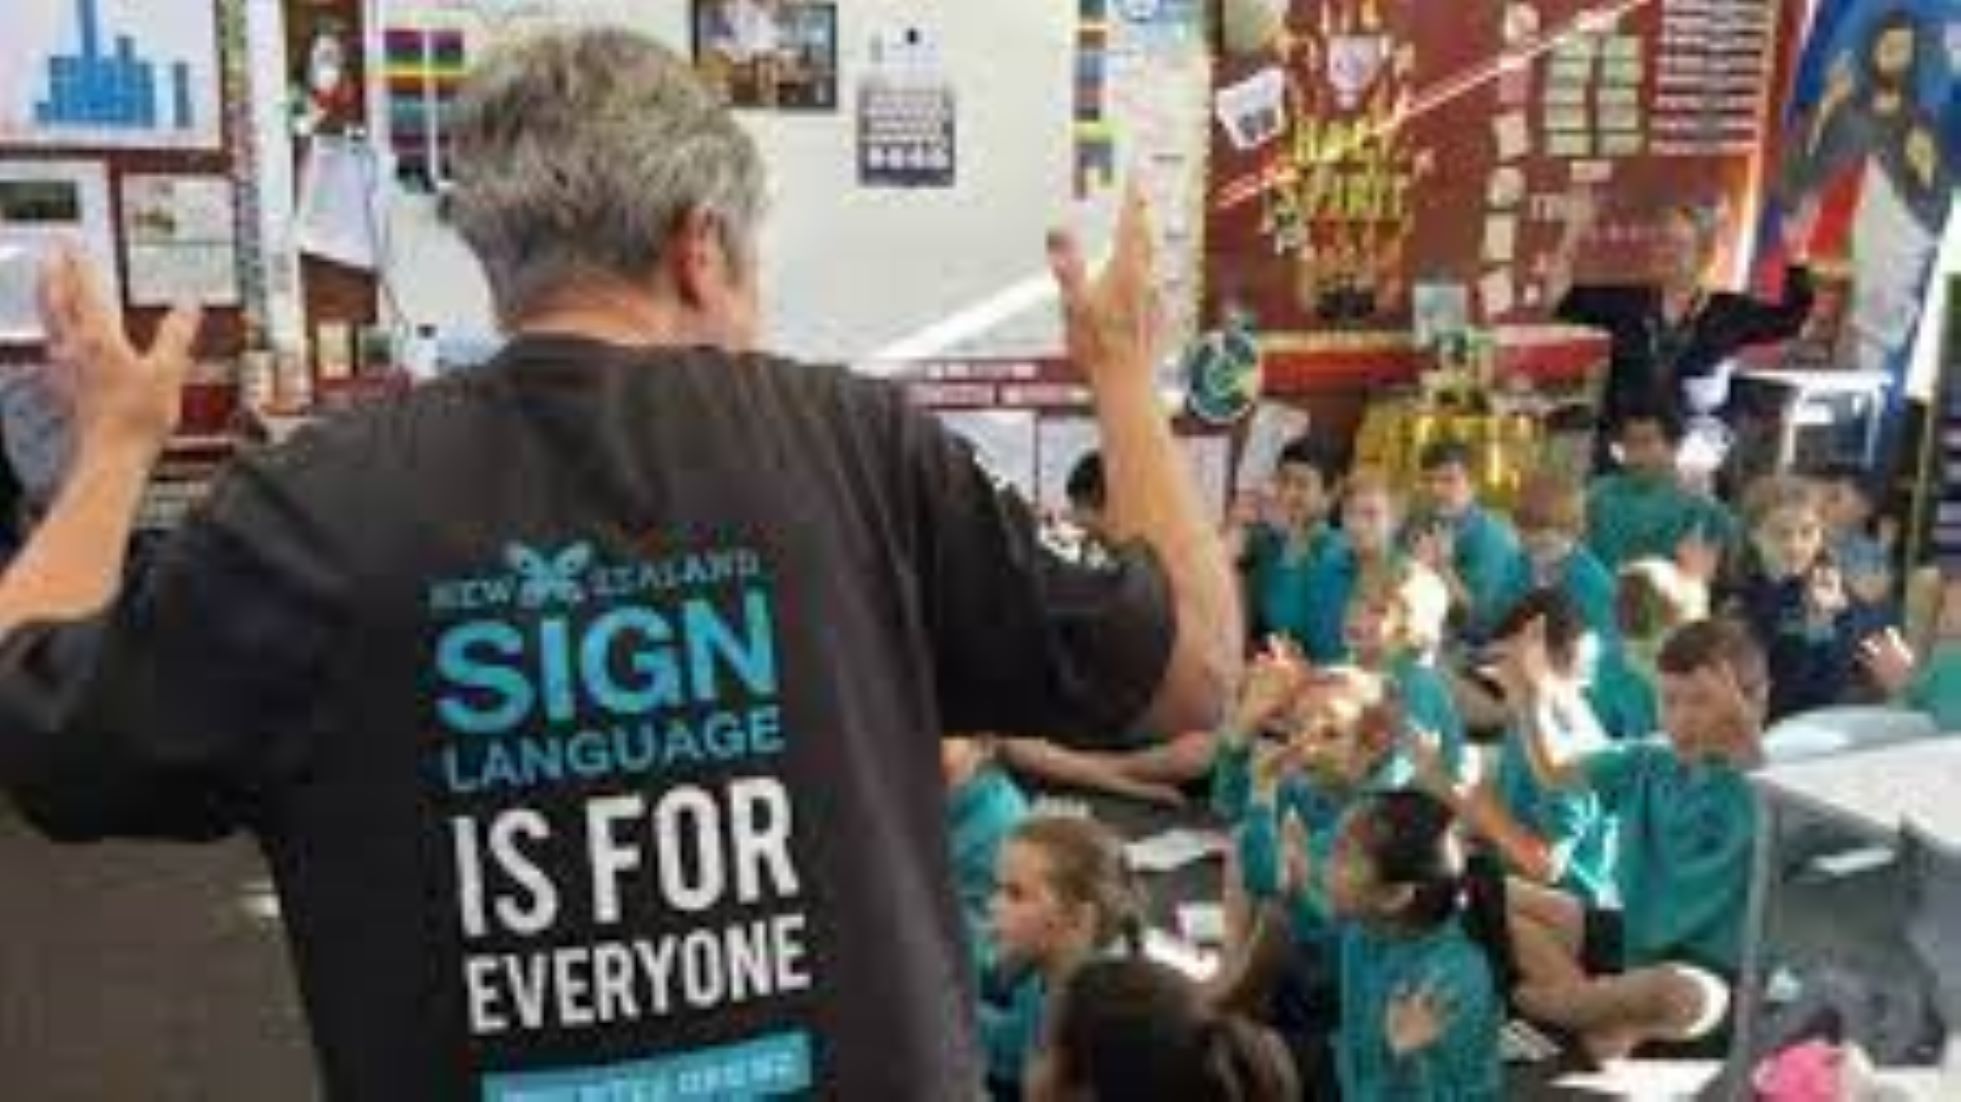 New Zealand Celebrates Sign Language Week